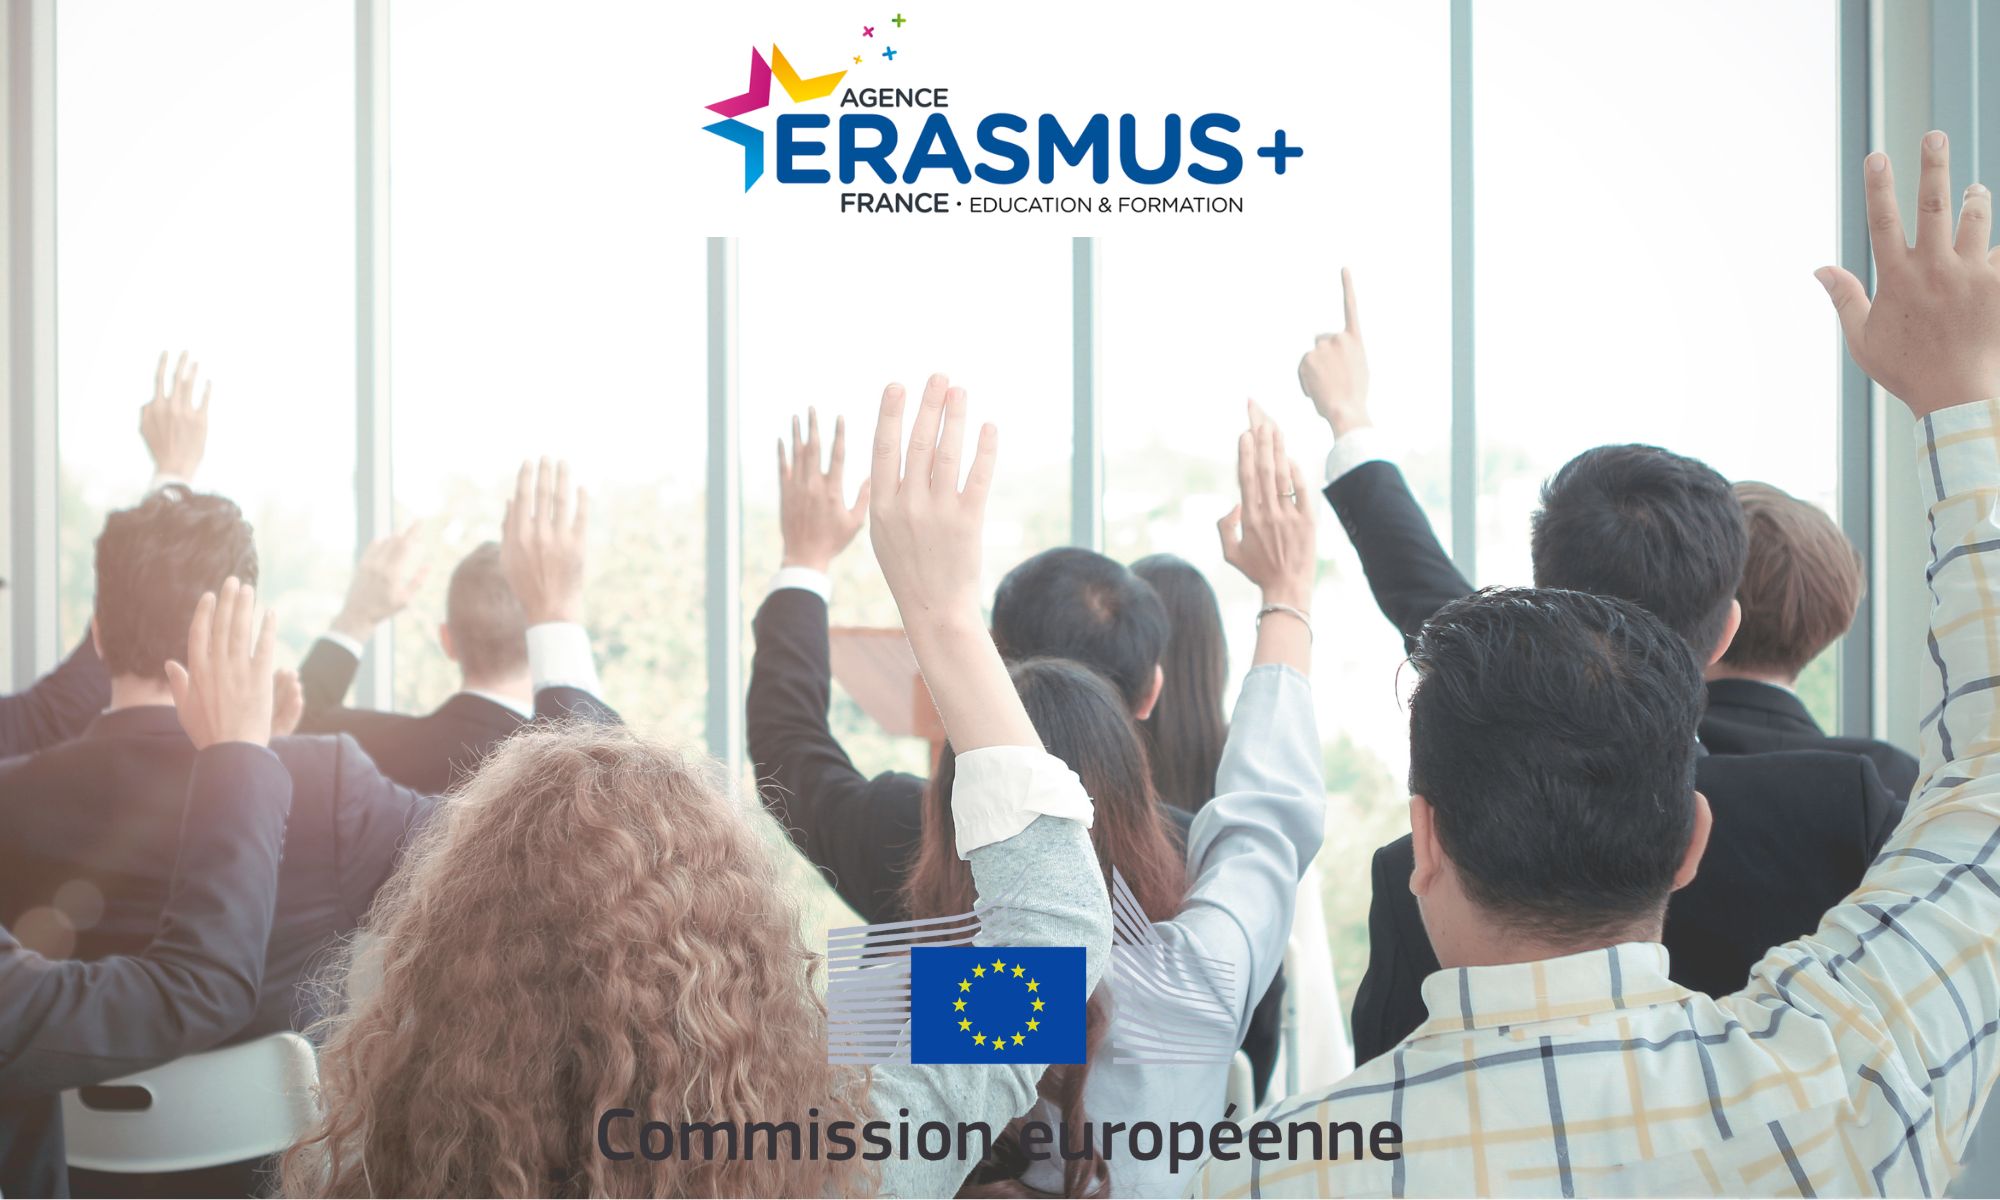 Donnez votre avis sur Erasmus + !